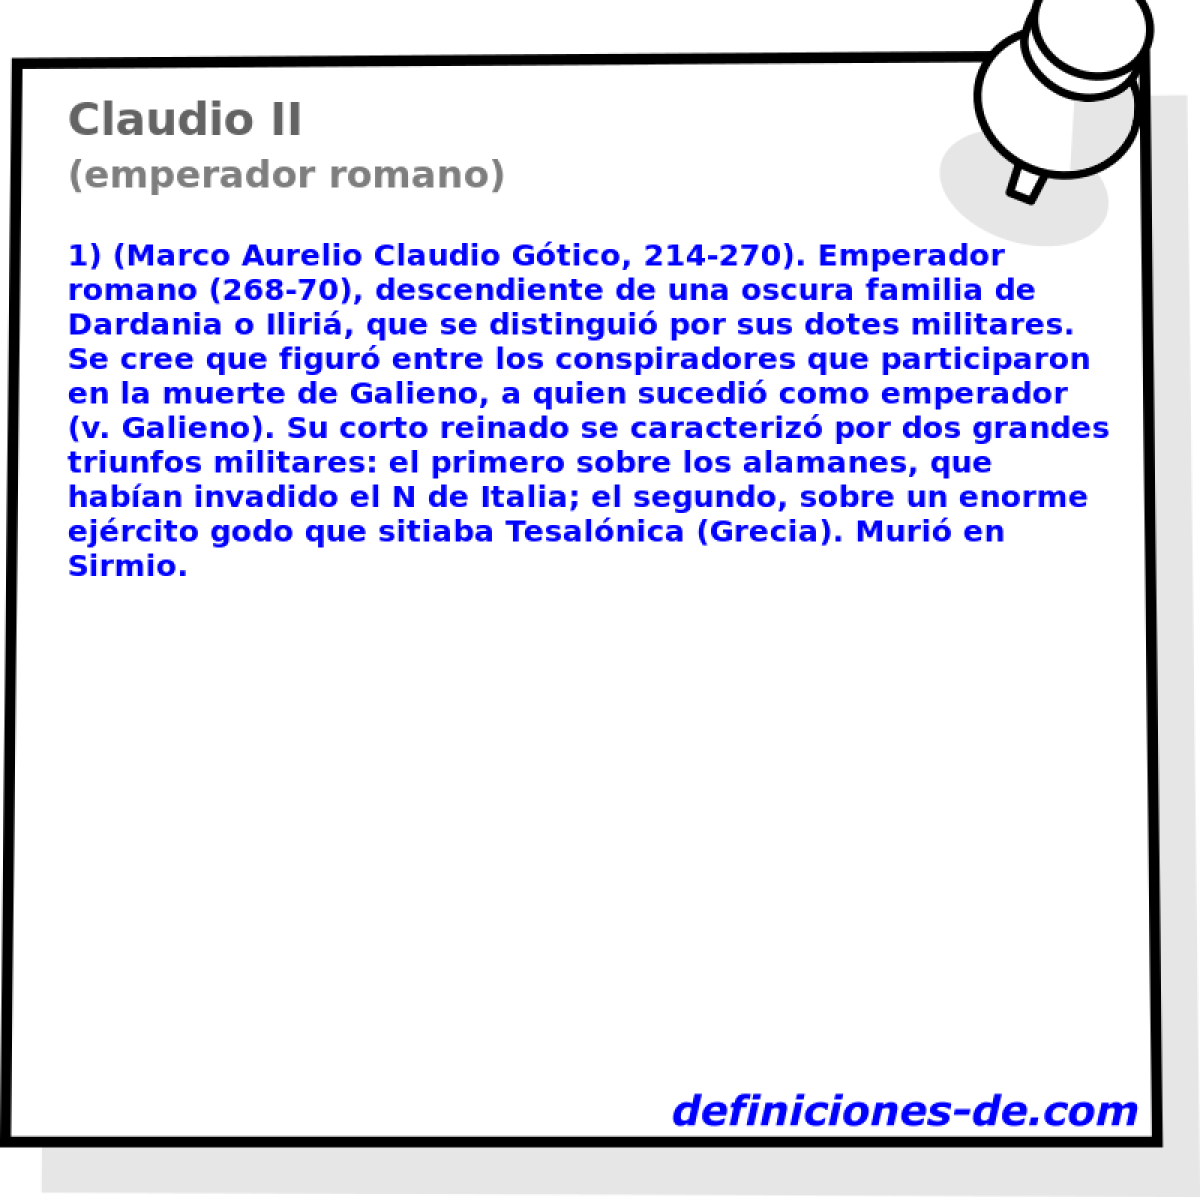 Claudio II (emperador romano)